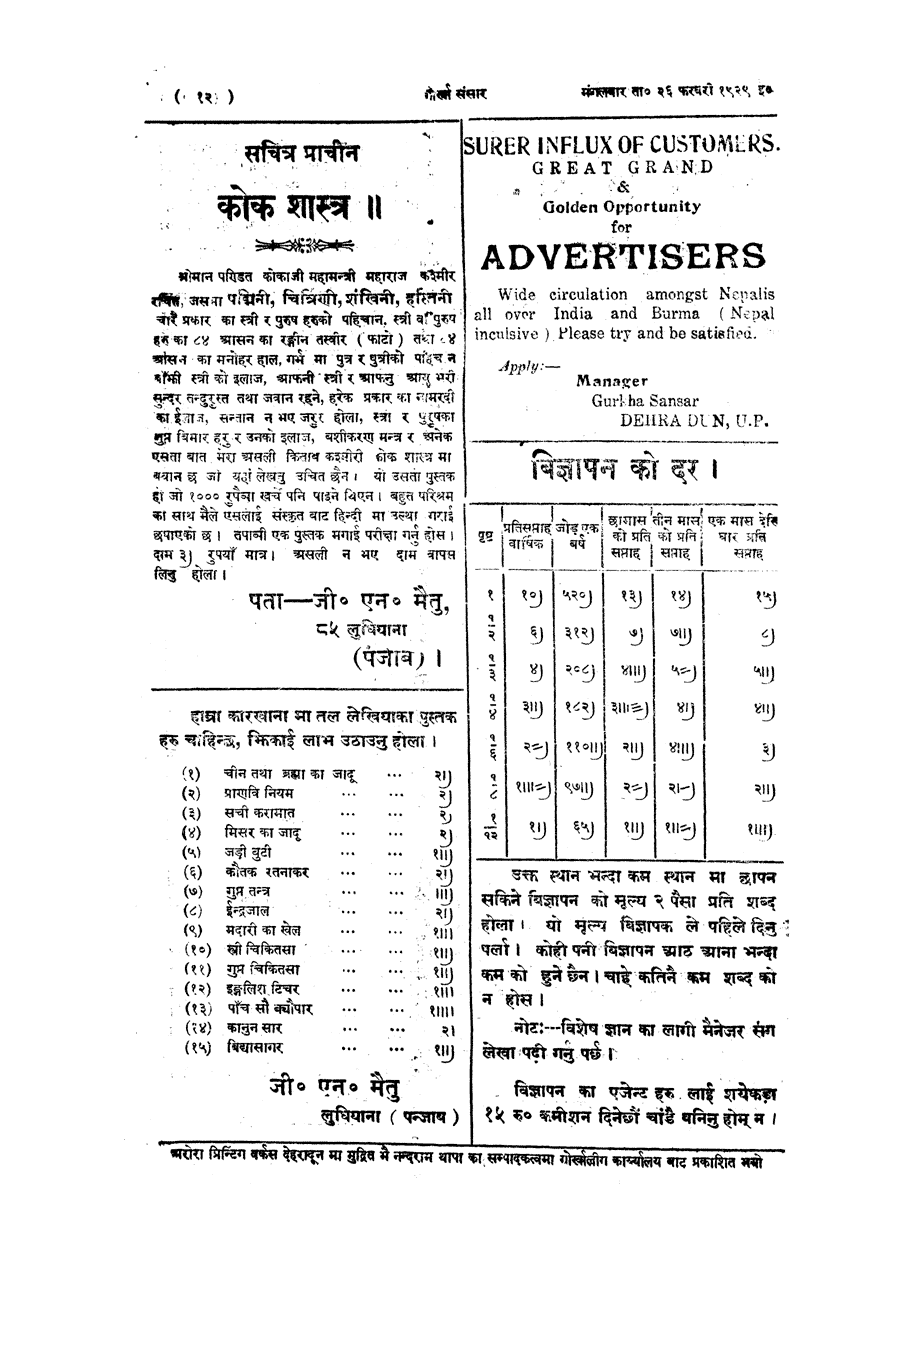 Gorkha Sansar, 26 Feb 1929, page 12